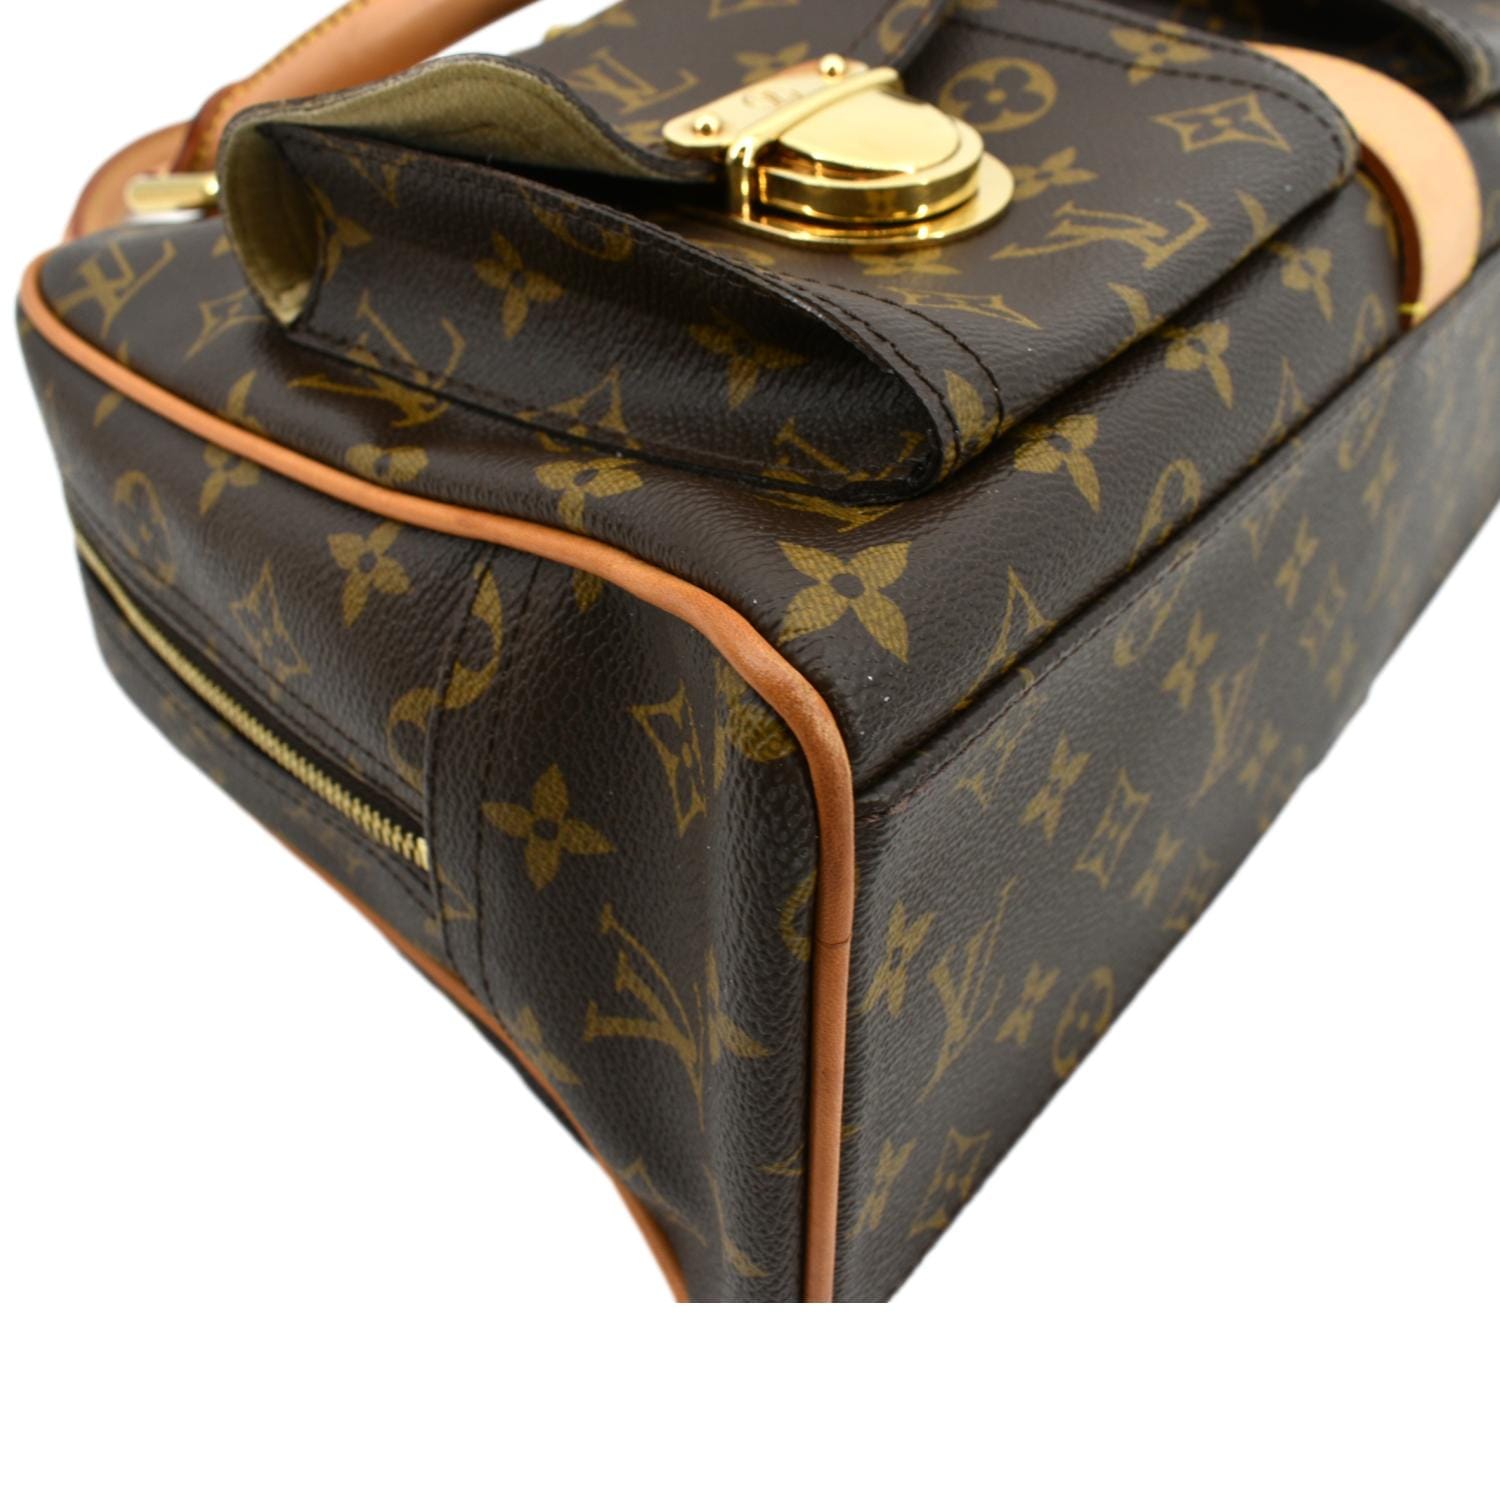 WHO'S YOUR MONEY ON?!  Louis Vuitton Pochette Metis vs. Gucci Horsebit  1955 Shoulder Bag 